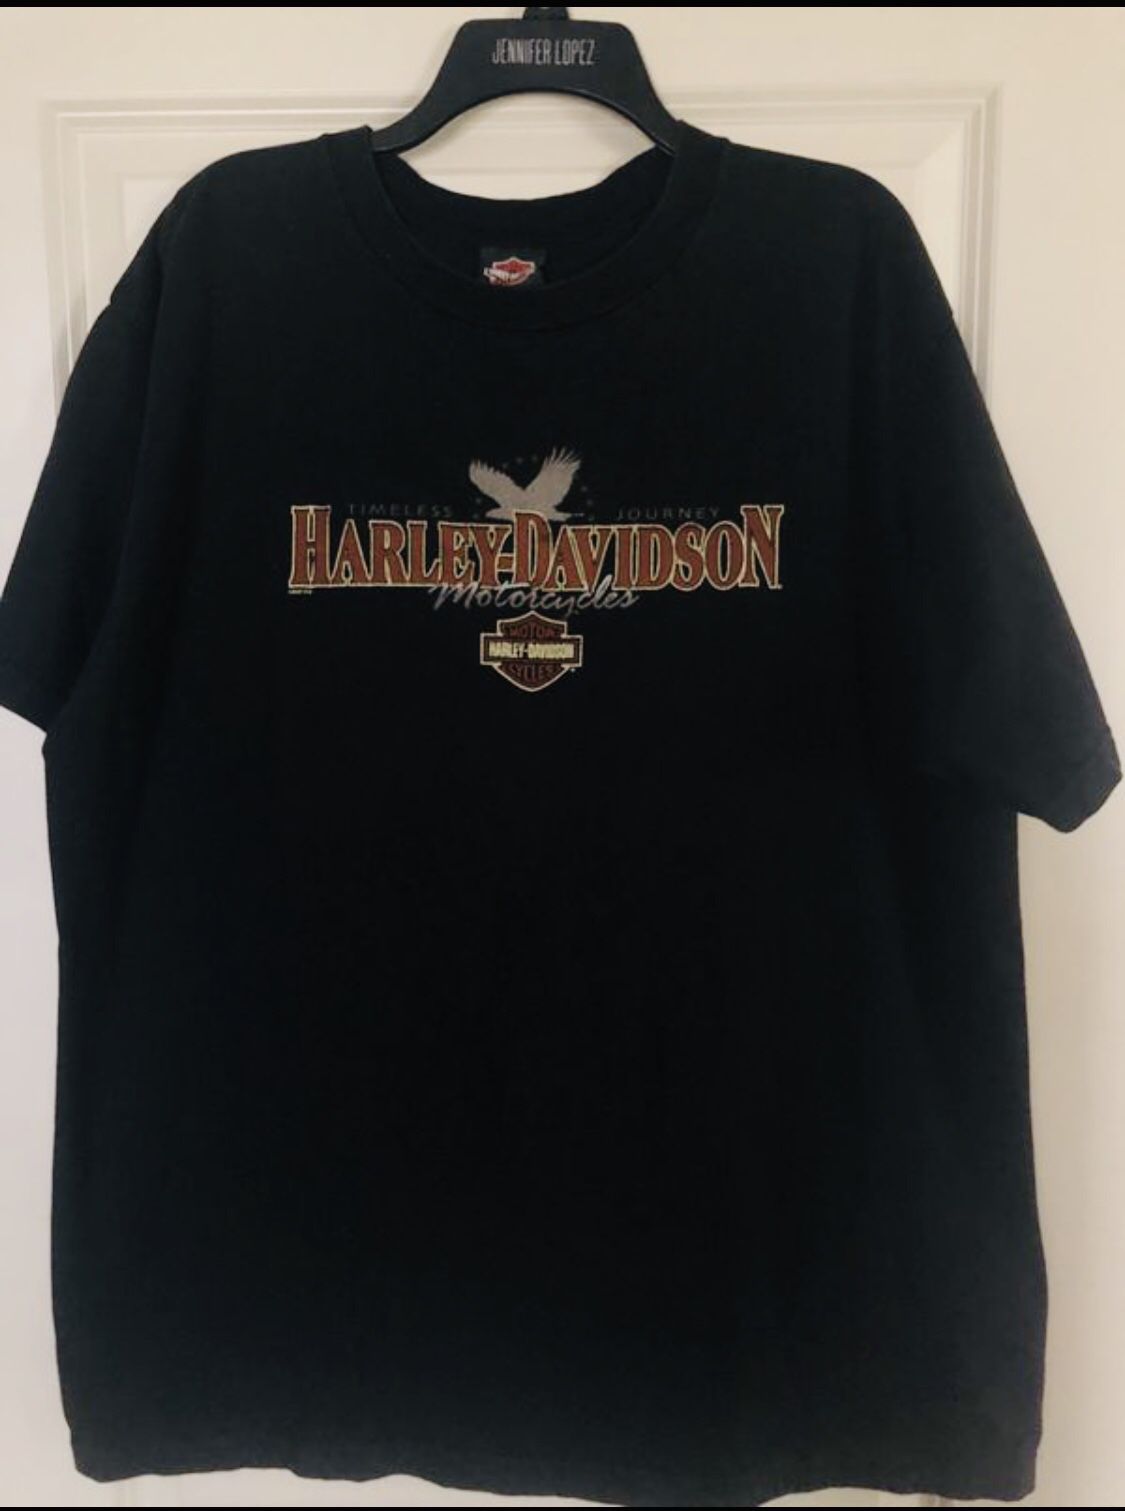 Man Harley Davidson man T-shirt